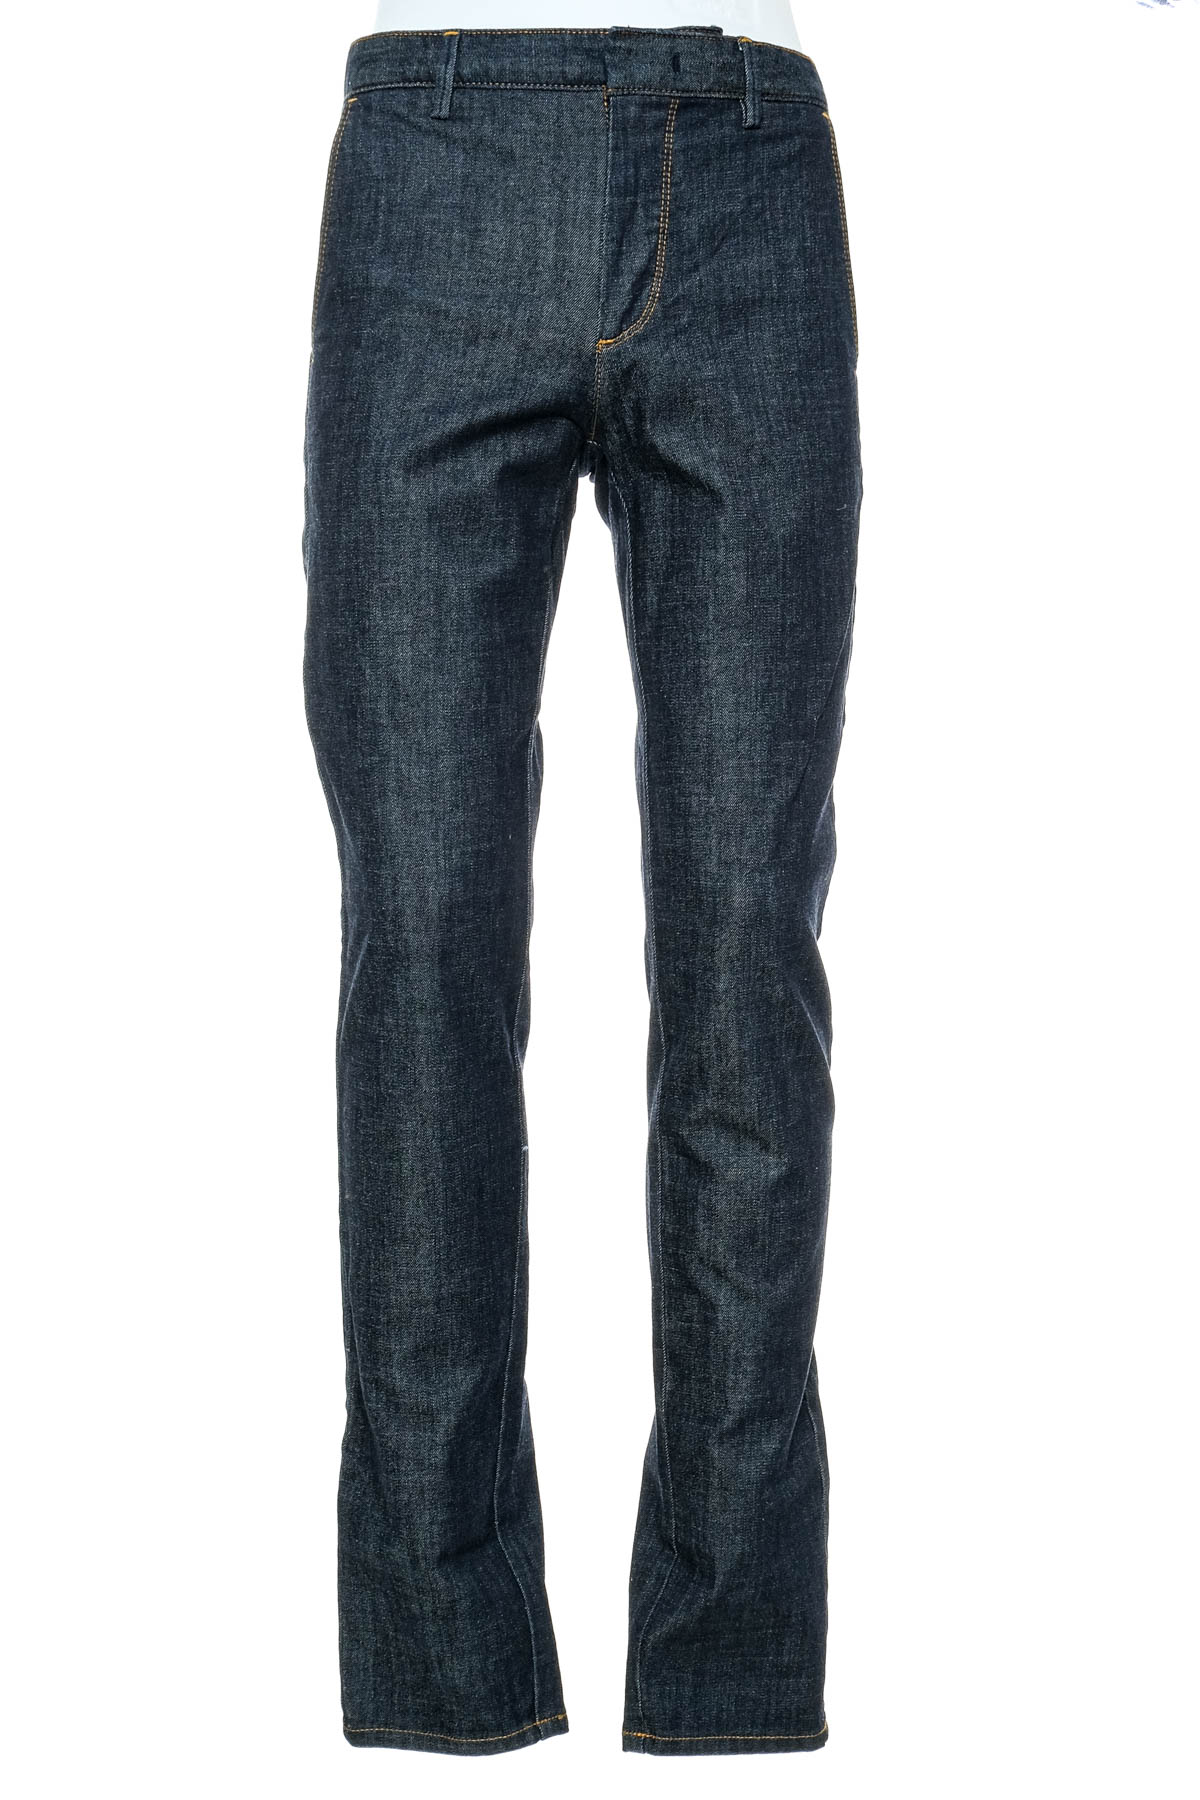 Jeans pentru bărbăți - United Colors of Benetton - 0